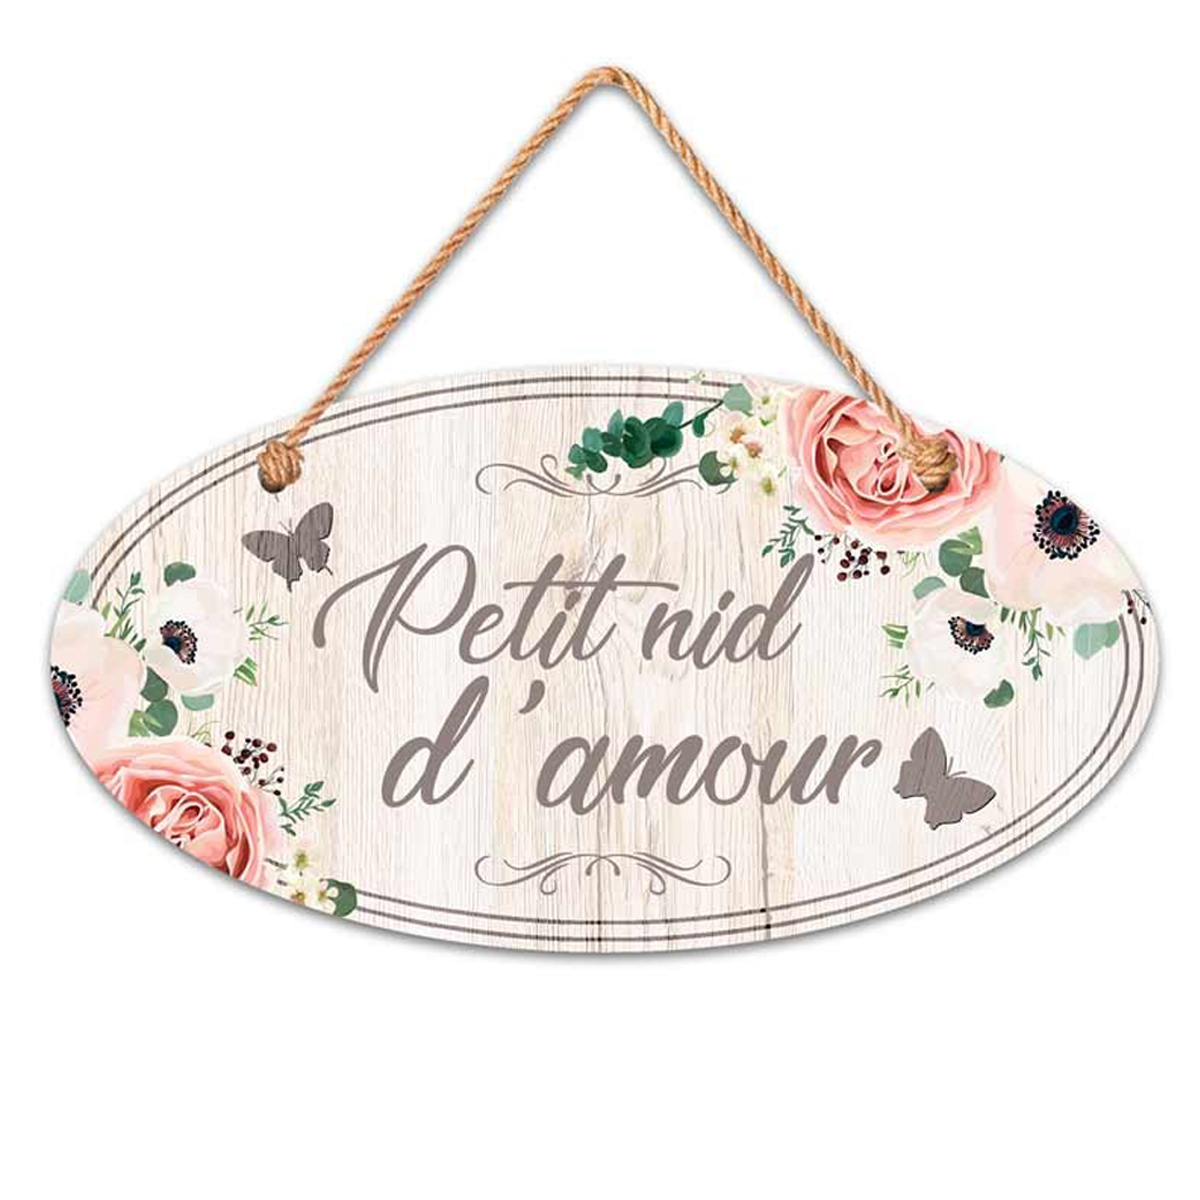 Plaque bois \'Messages\' beige rose taupe (Petit nid d\'Amour) - 195x105 cm - [Q5961]